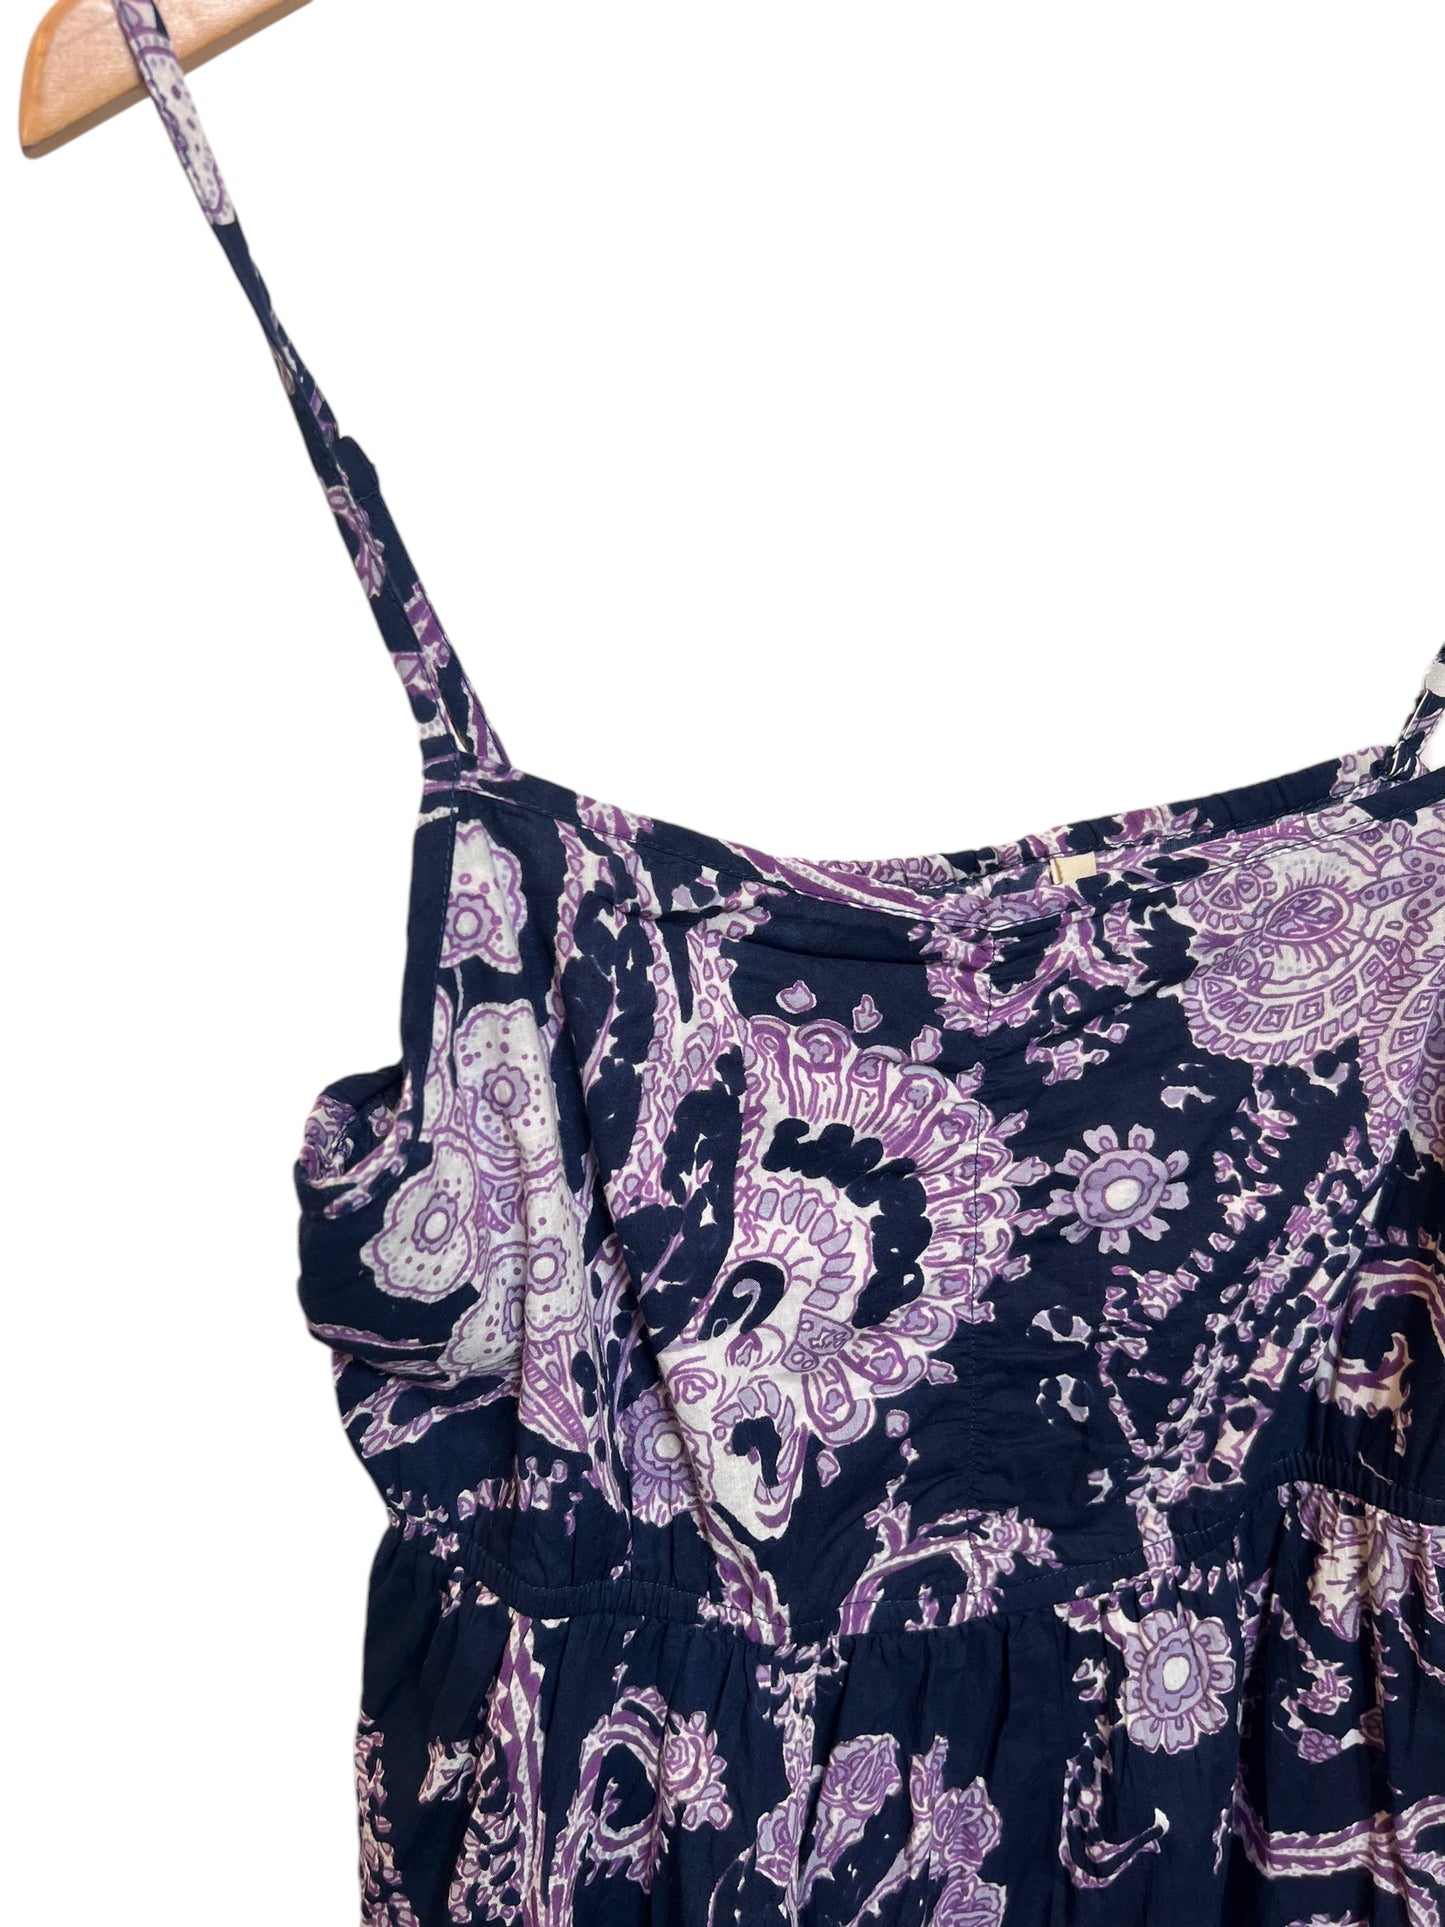 Women’s Dark Purple Floral Summer Dress (Size M)